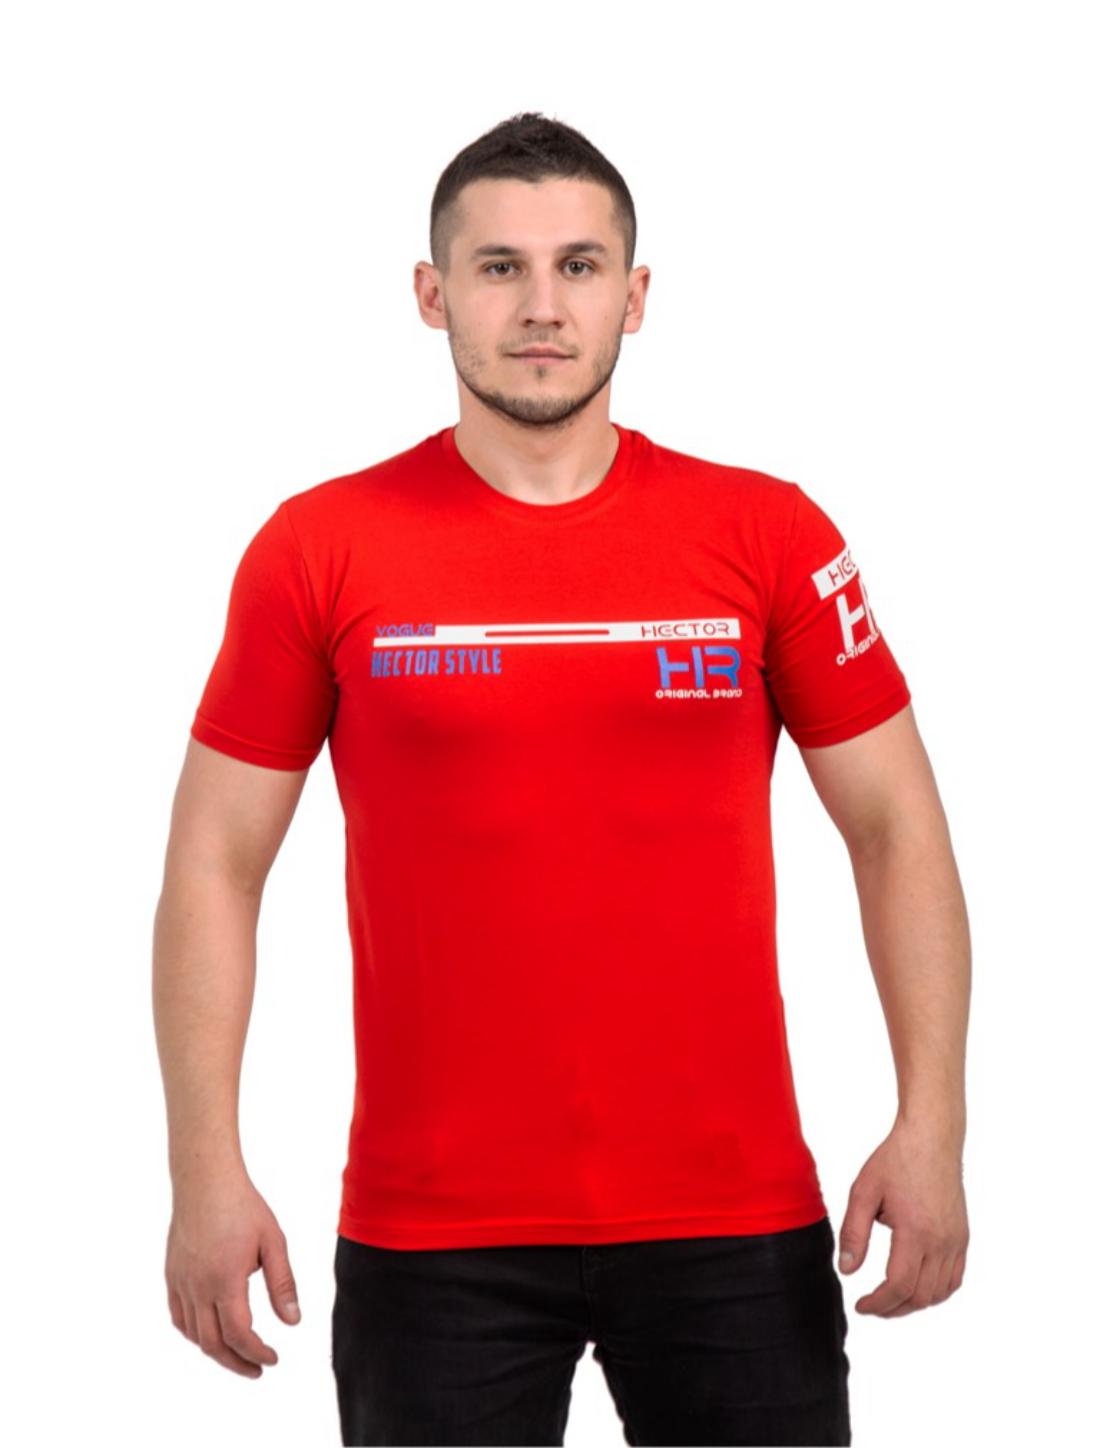 Мужская футболка hector style 15008